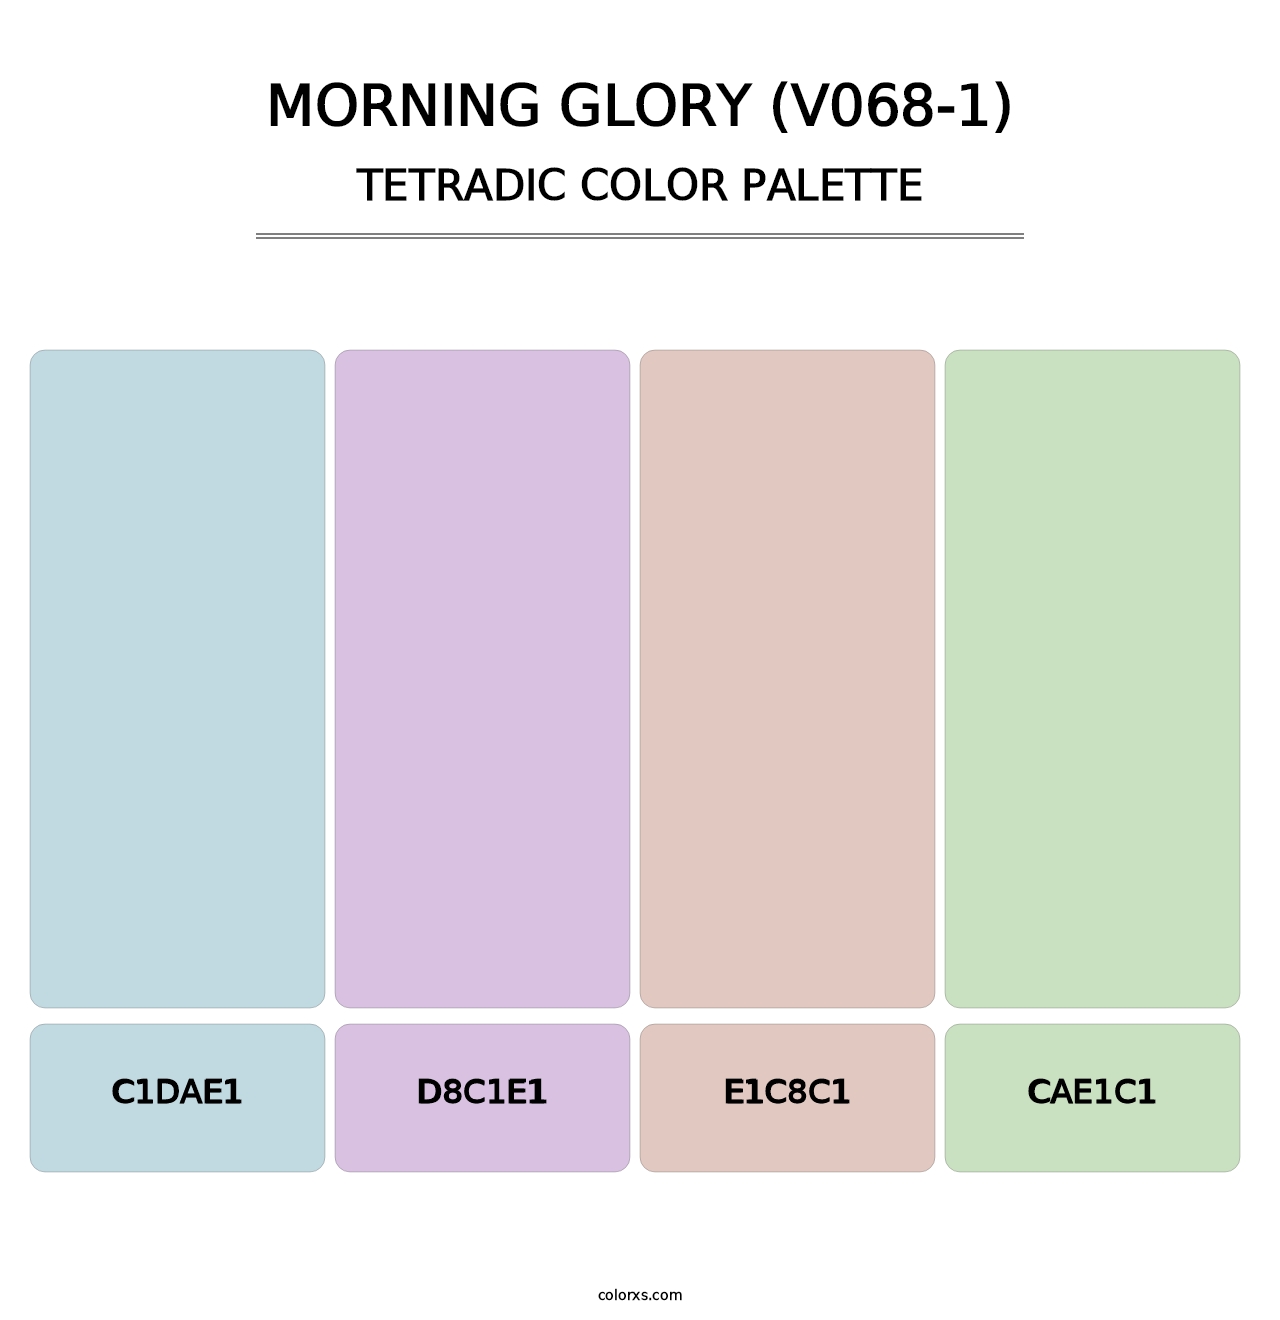 Morning Glory (V068-1) - Tetradic Color Palette